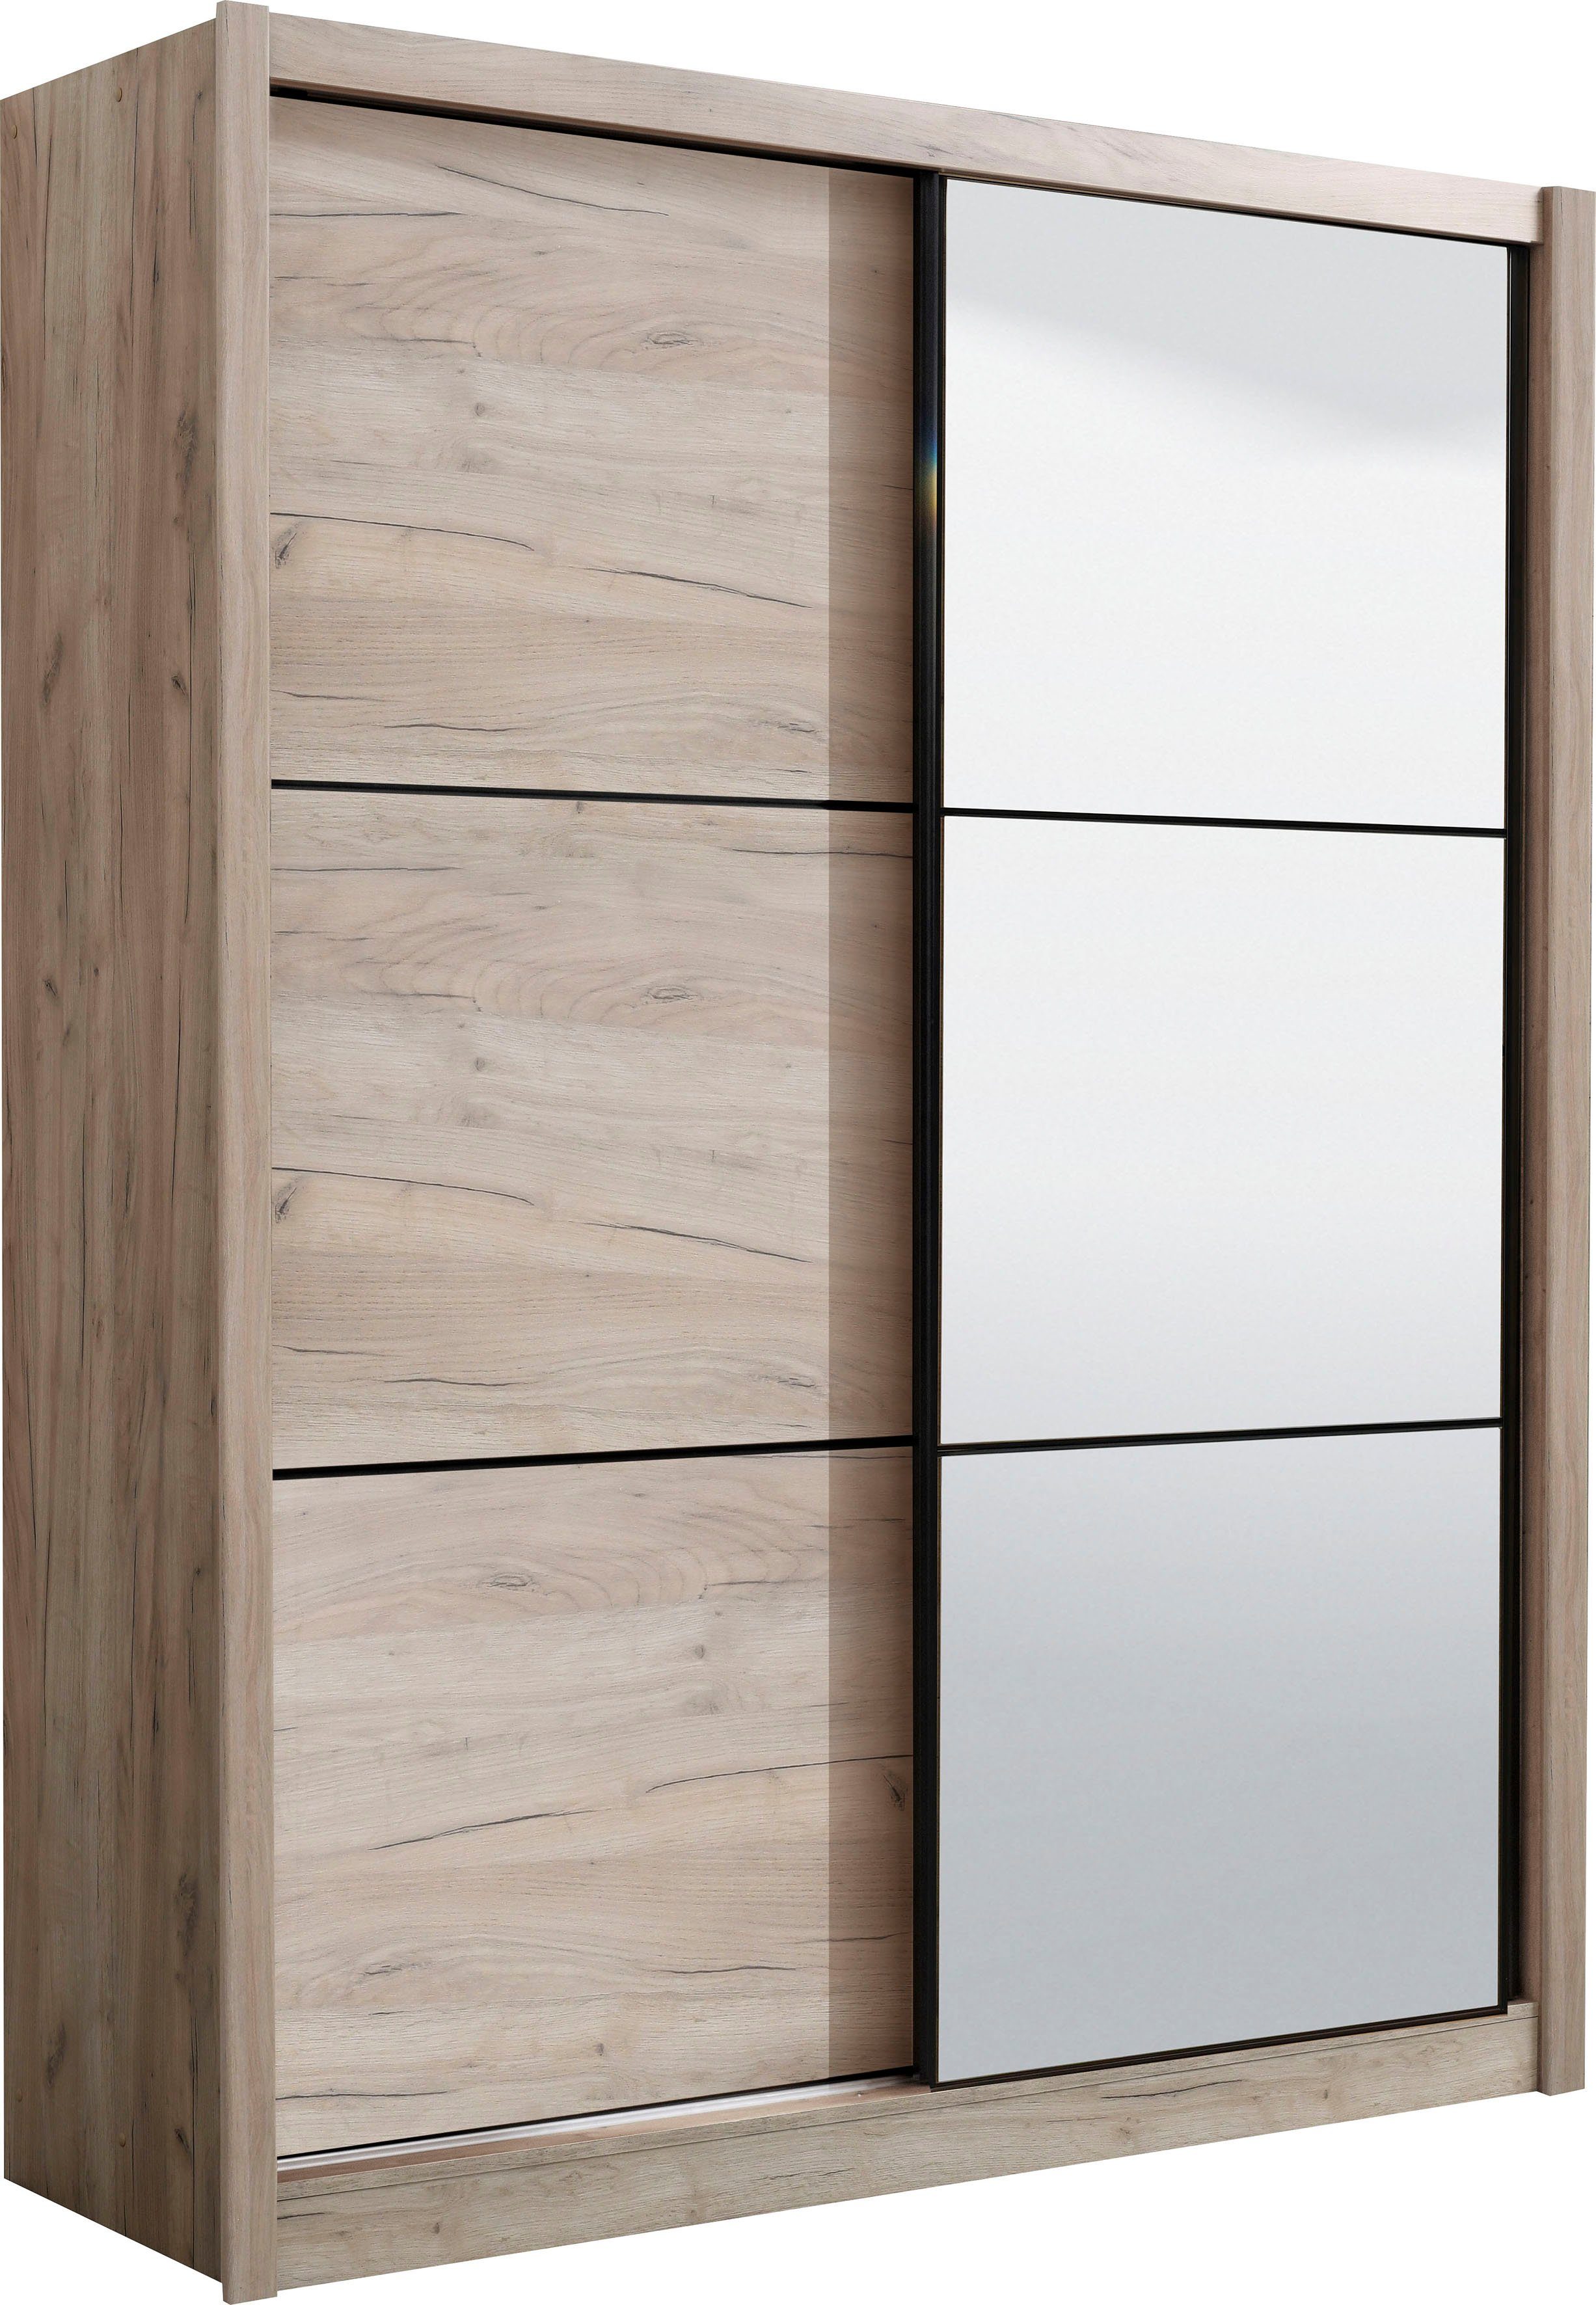 INOSIGN Schwebetürenschrank Eiche | Dekor Eiche und grau Navara grau Spiegel zusätzlichen Dekor mit Einlegeböden